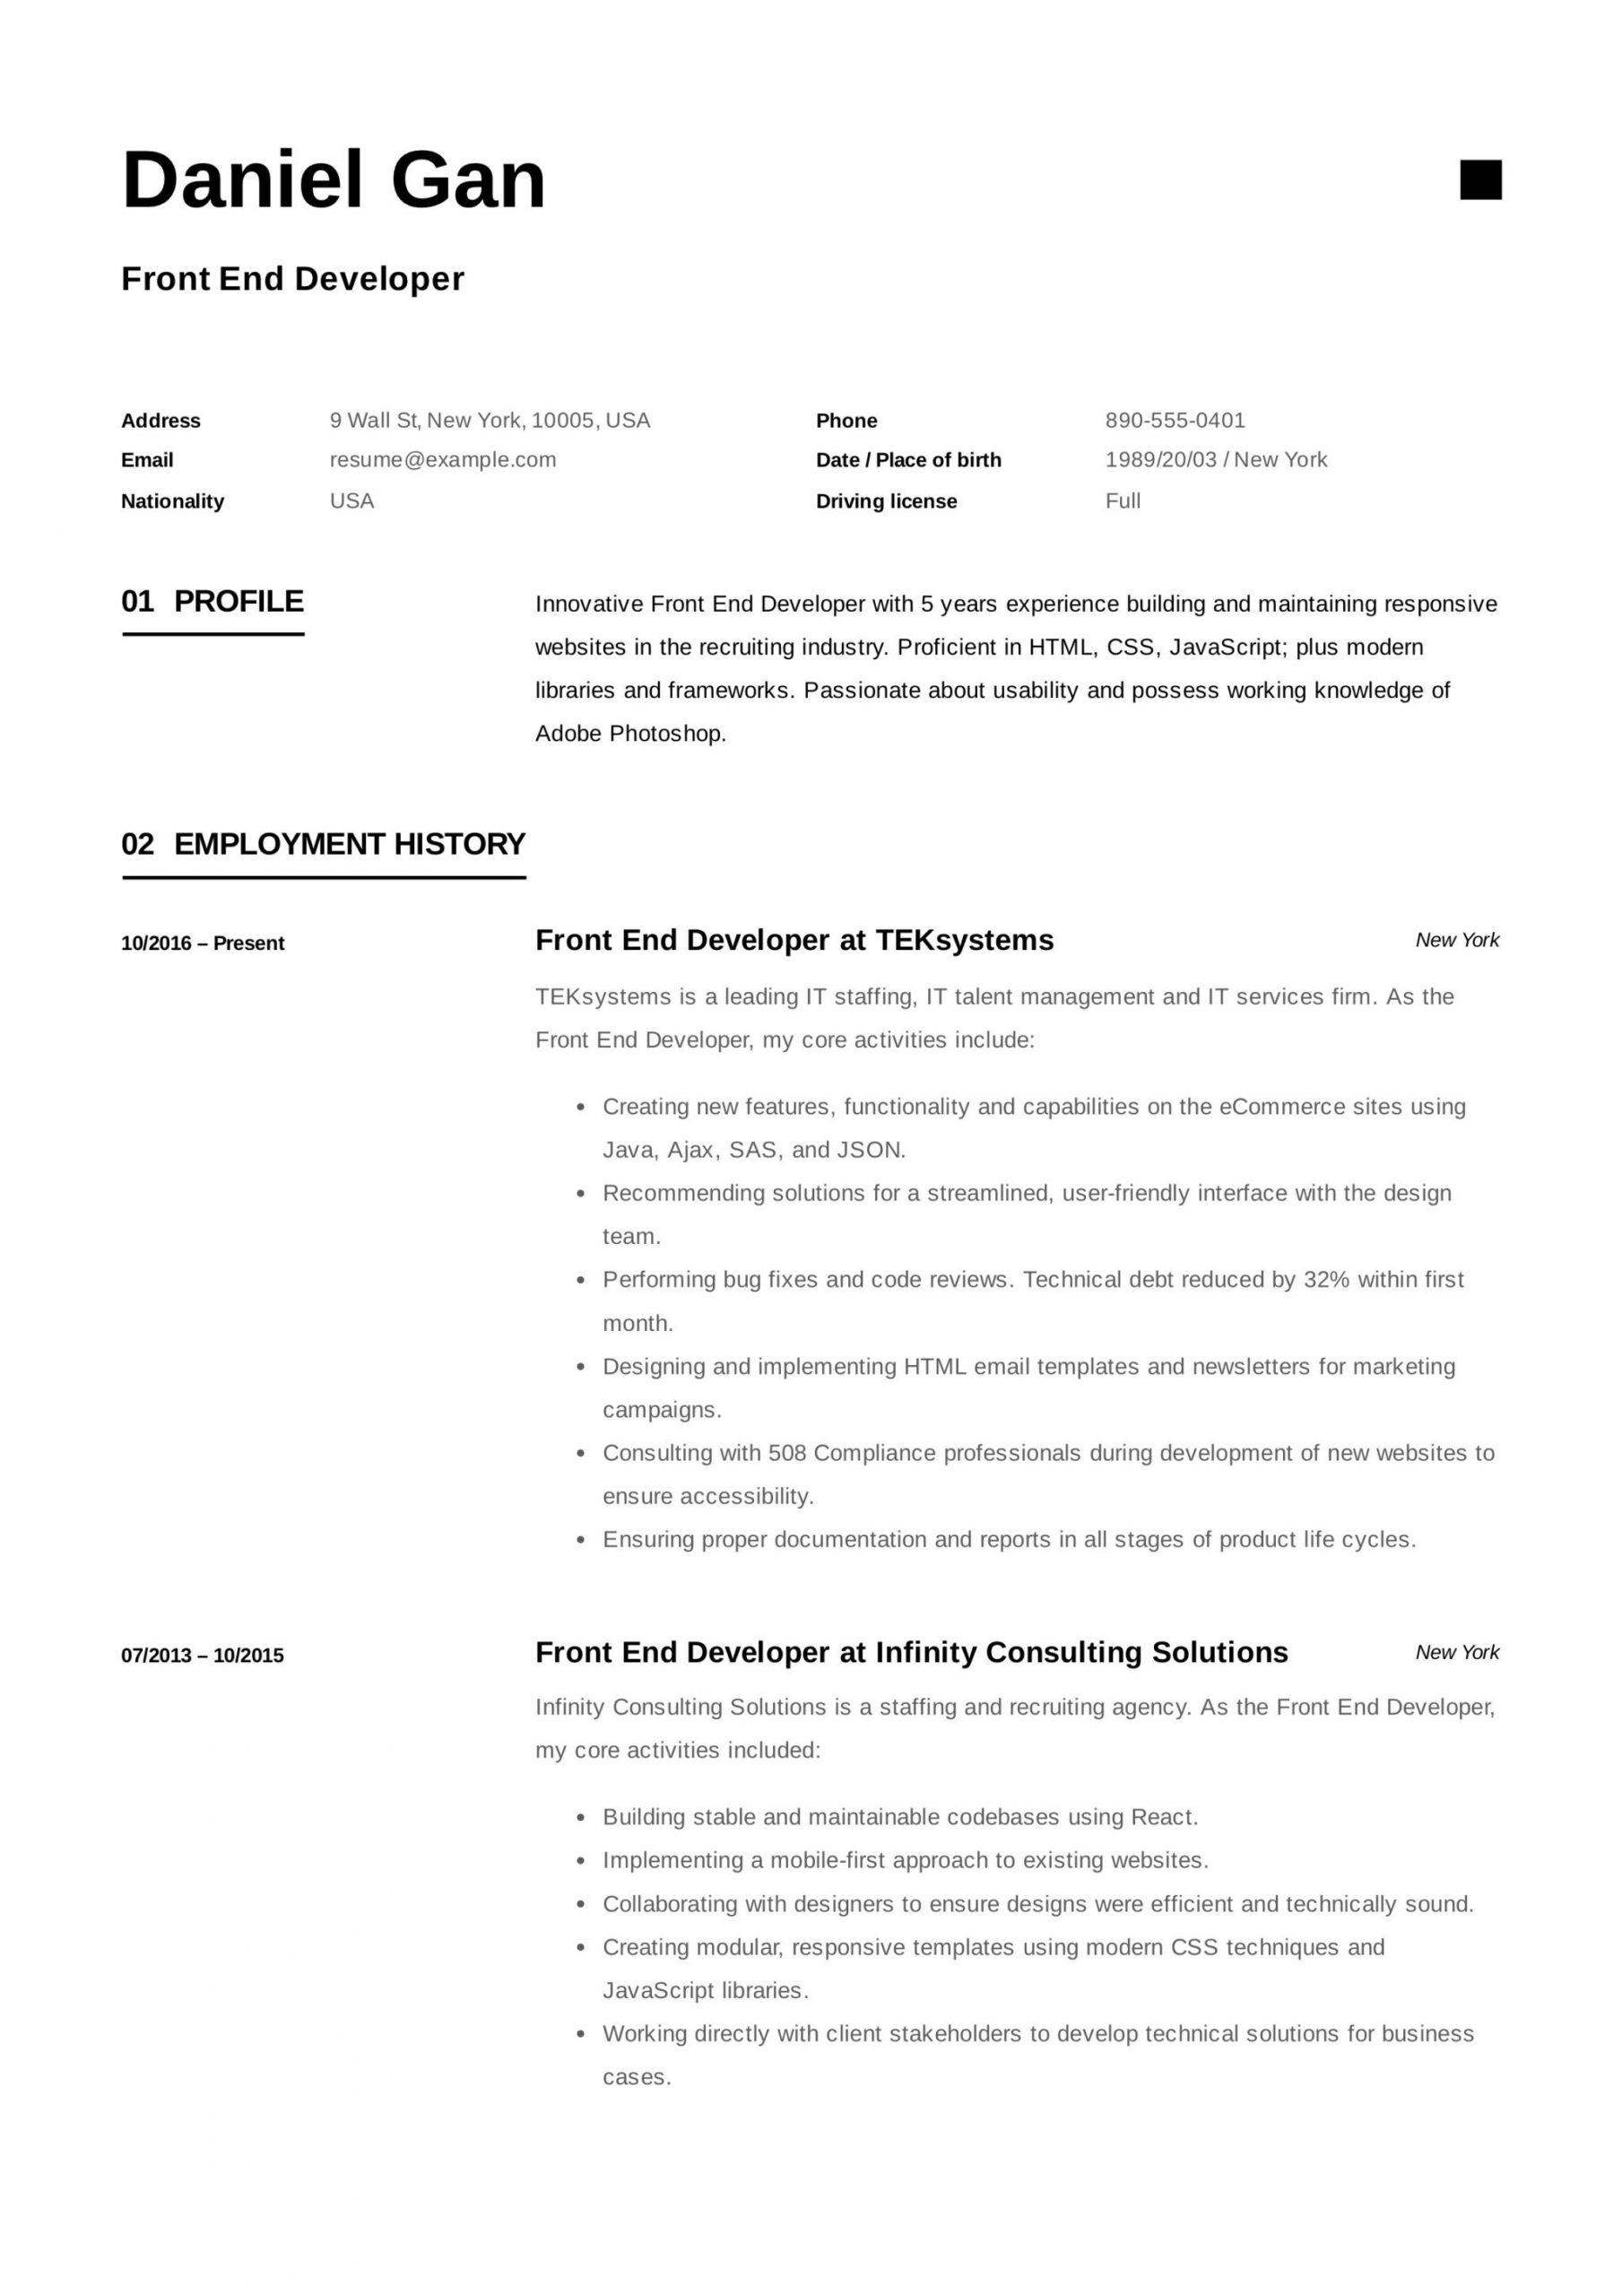 Junior Web Developer Resume Objective Sample 17 Front-end Developer Resume Examples & Guide Pdf 2020